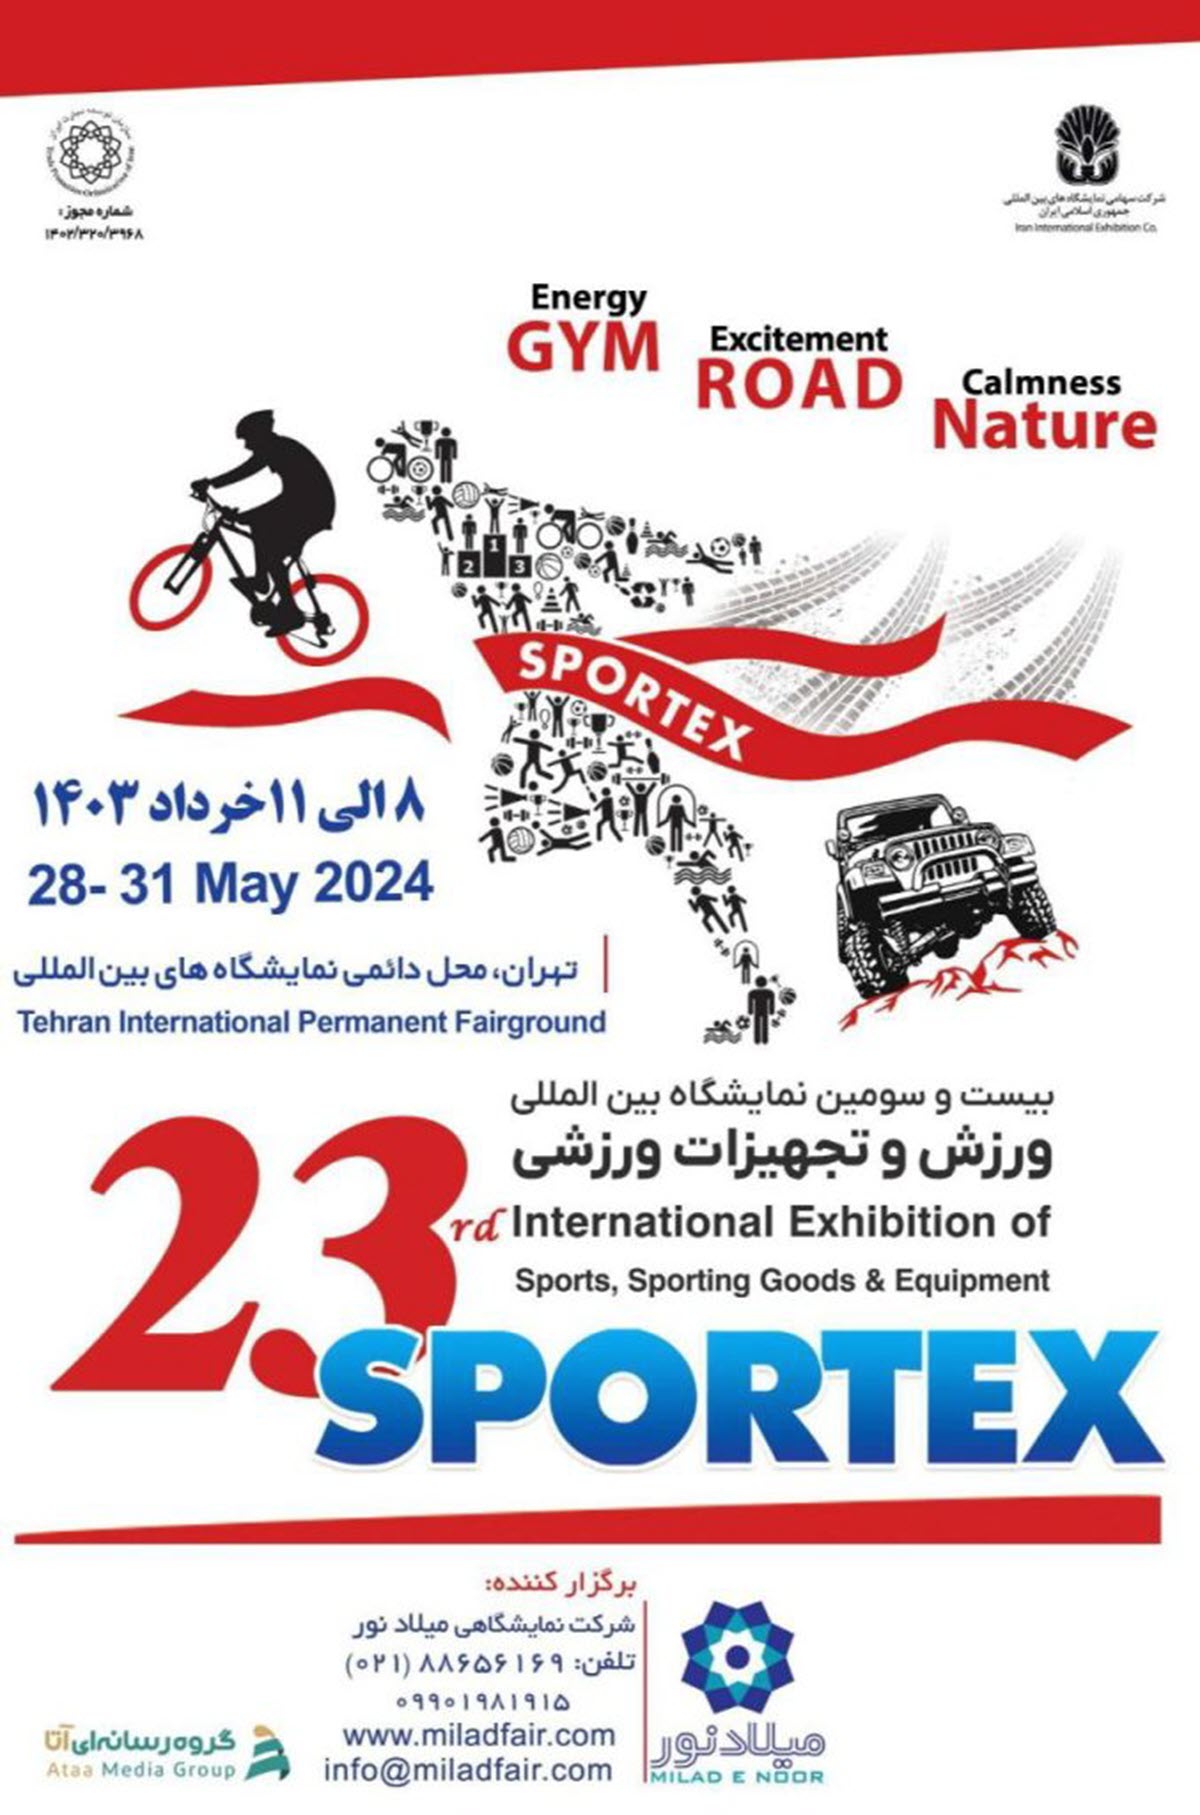 بیست و سومین نمایشگاه ورزش و تجهیزات ورزشی (اسپورتکس)